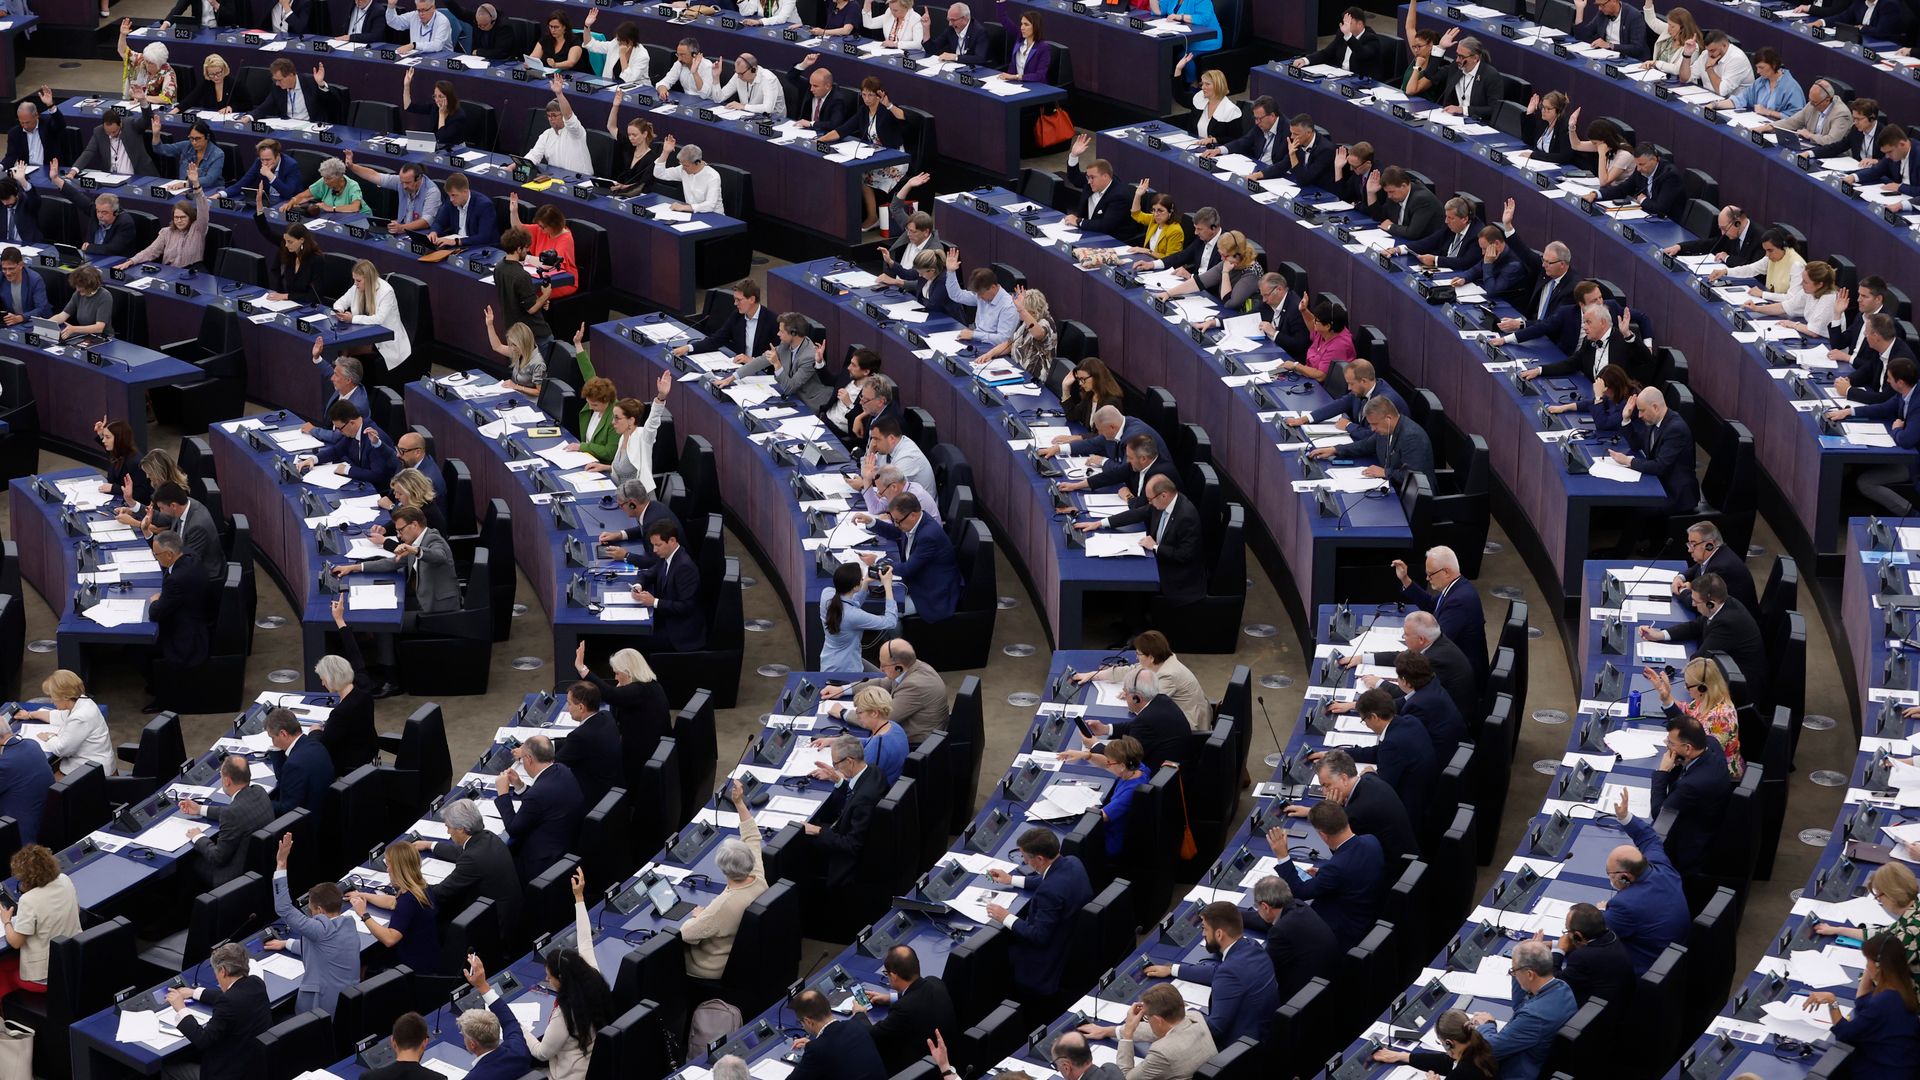 europa-wahl: europa-optimismus der deutschen hält sich in grenzen – umfrage des europaparlaments